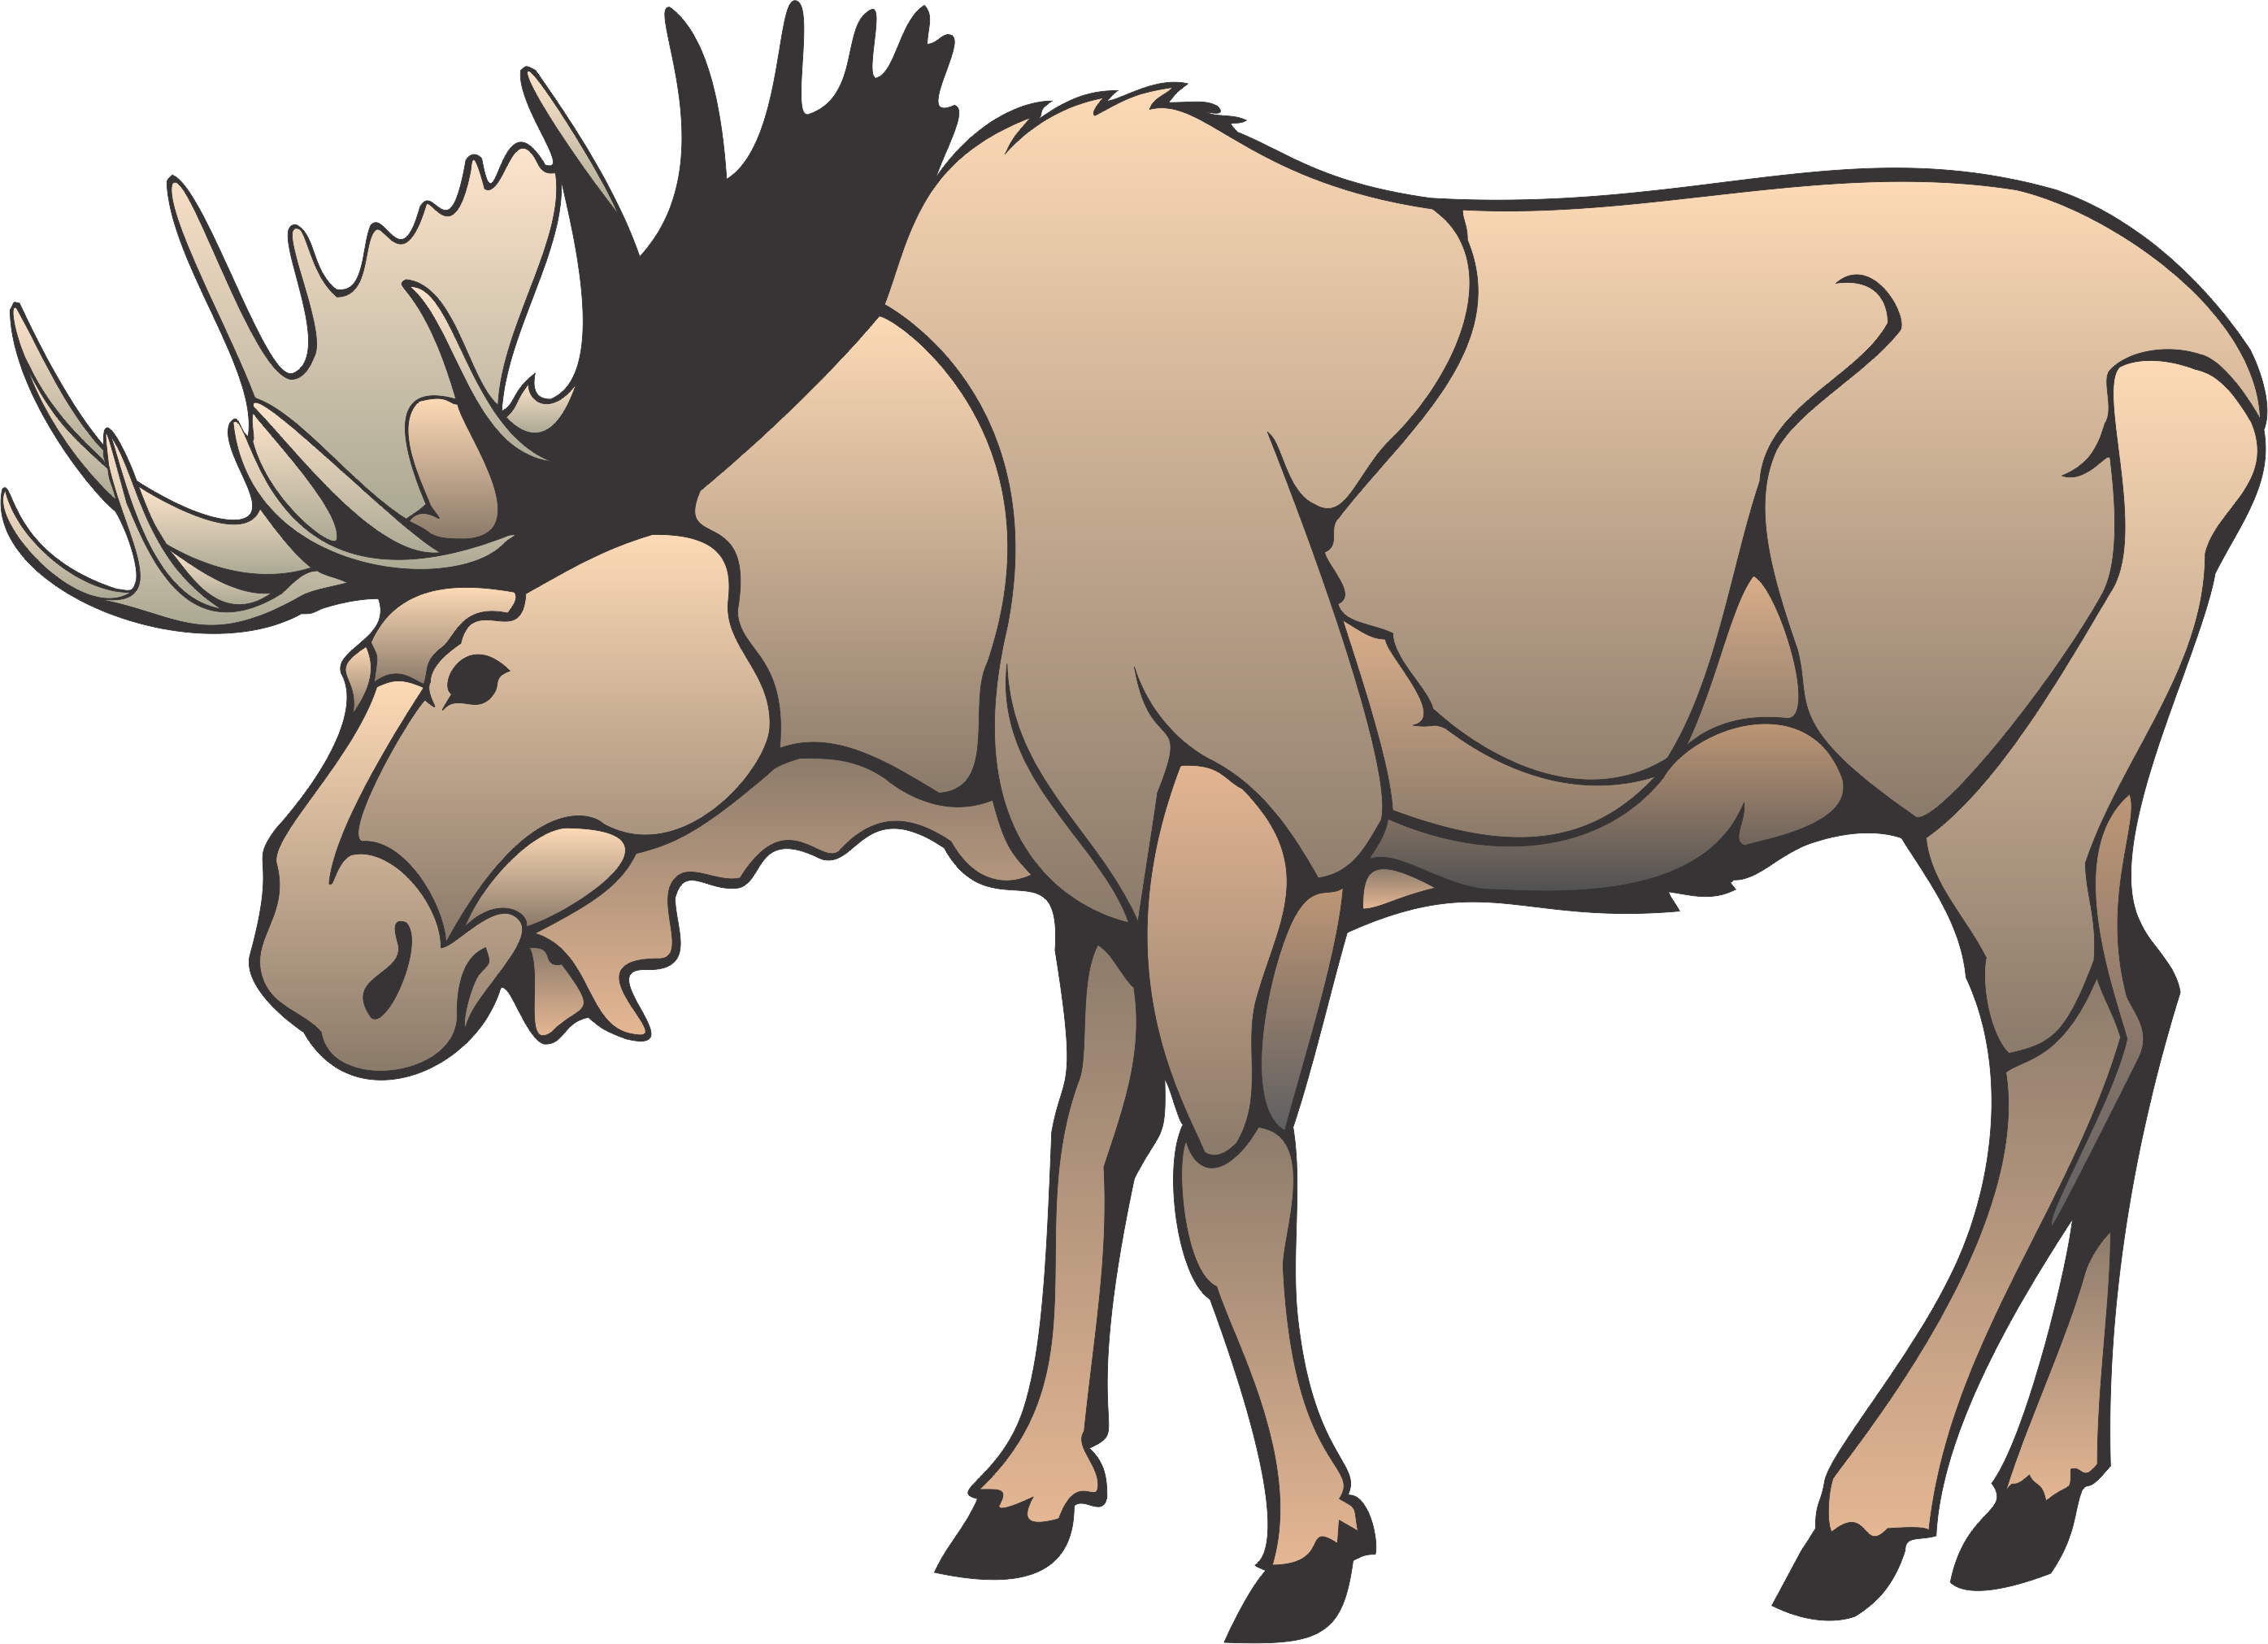 Free Moose Cartoon Images, Download Free Moose Cartoon Images png images, Free ClipArts on